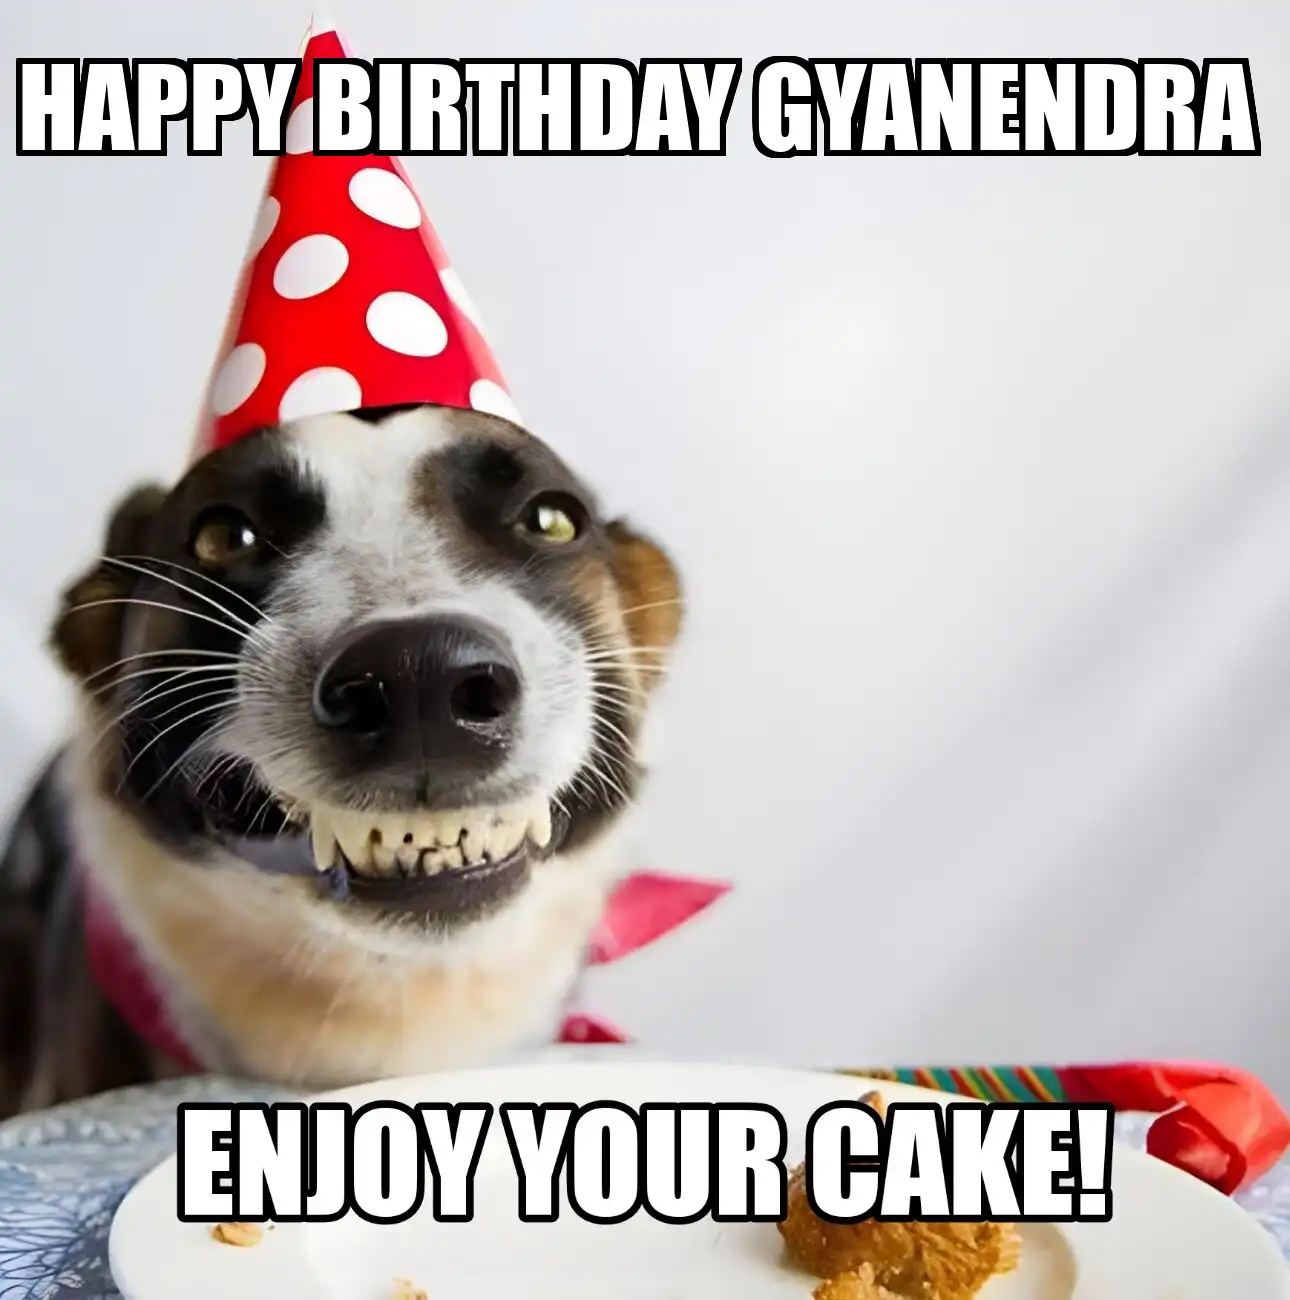 Happy Birthday Gyanendra Enjoy Your Cake Dog Meme